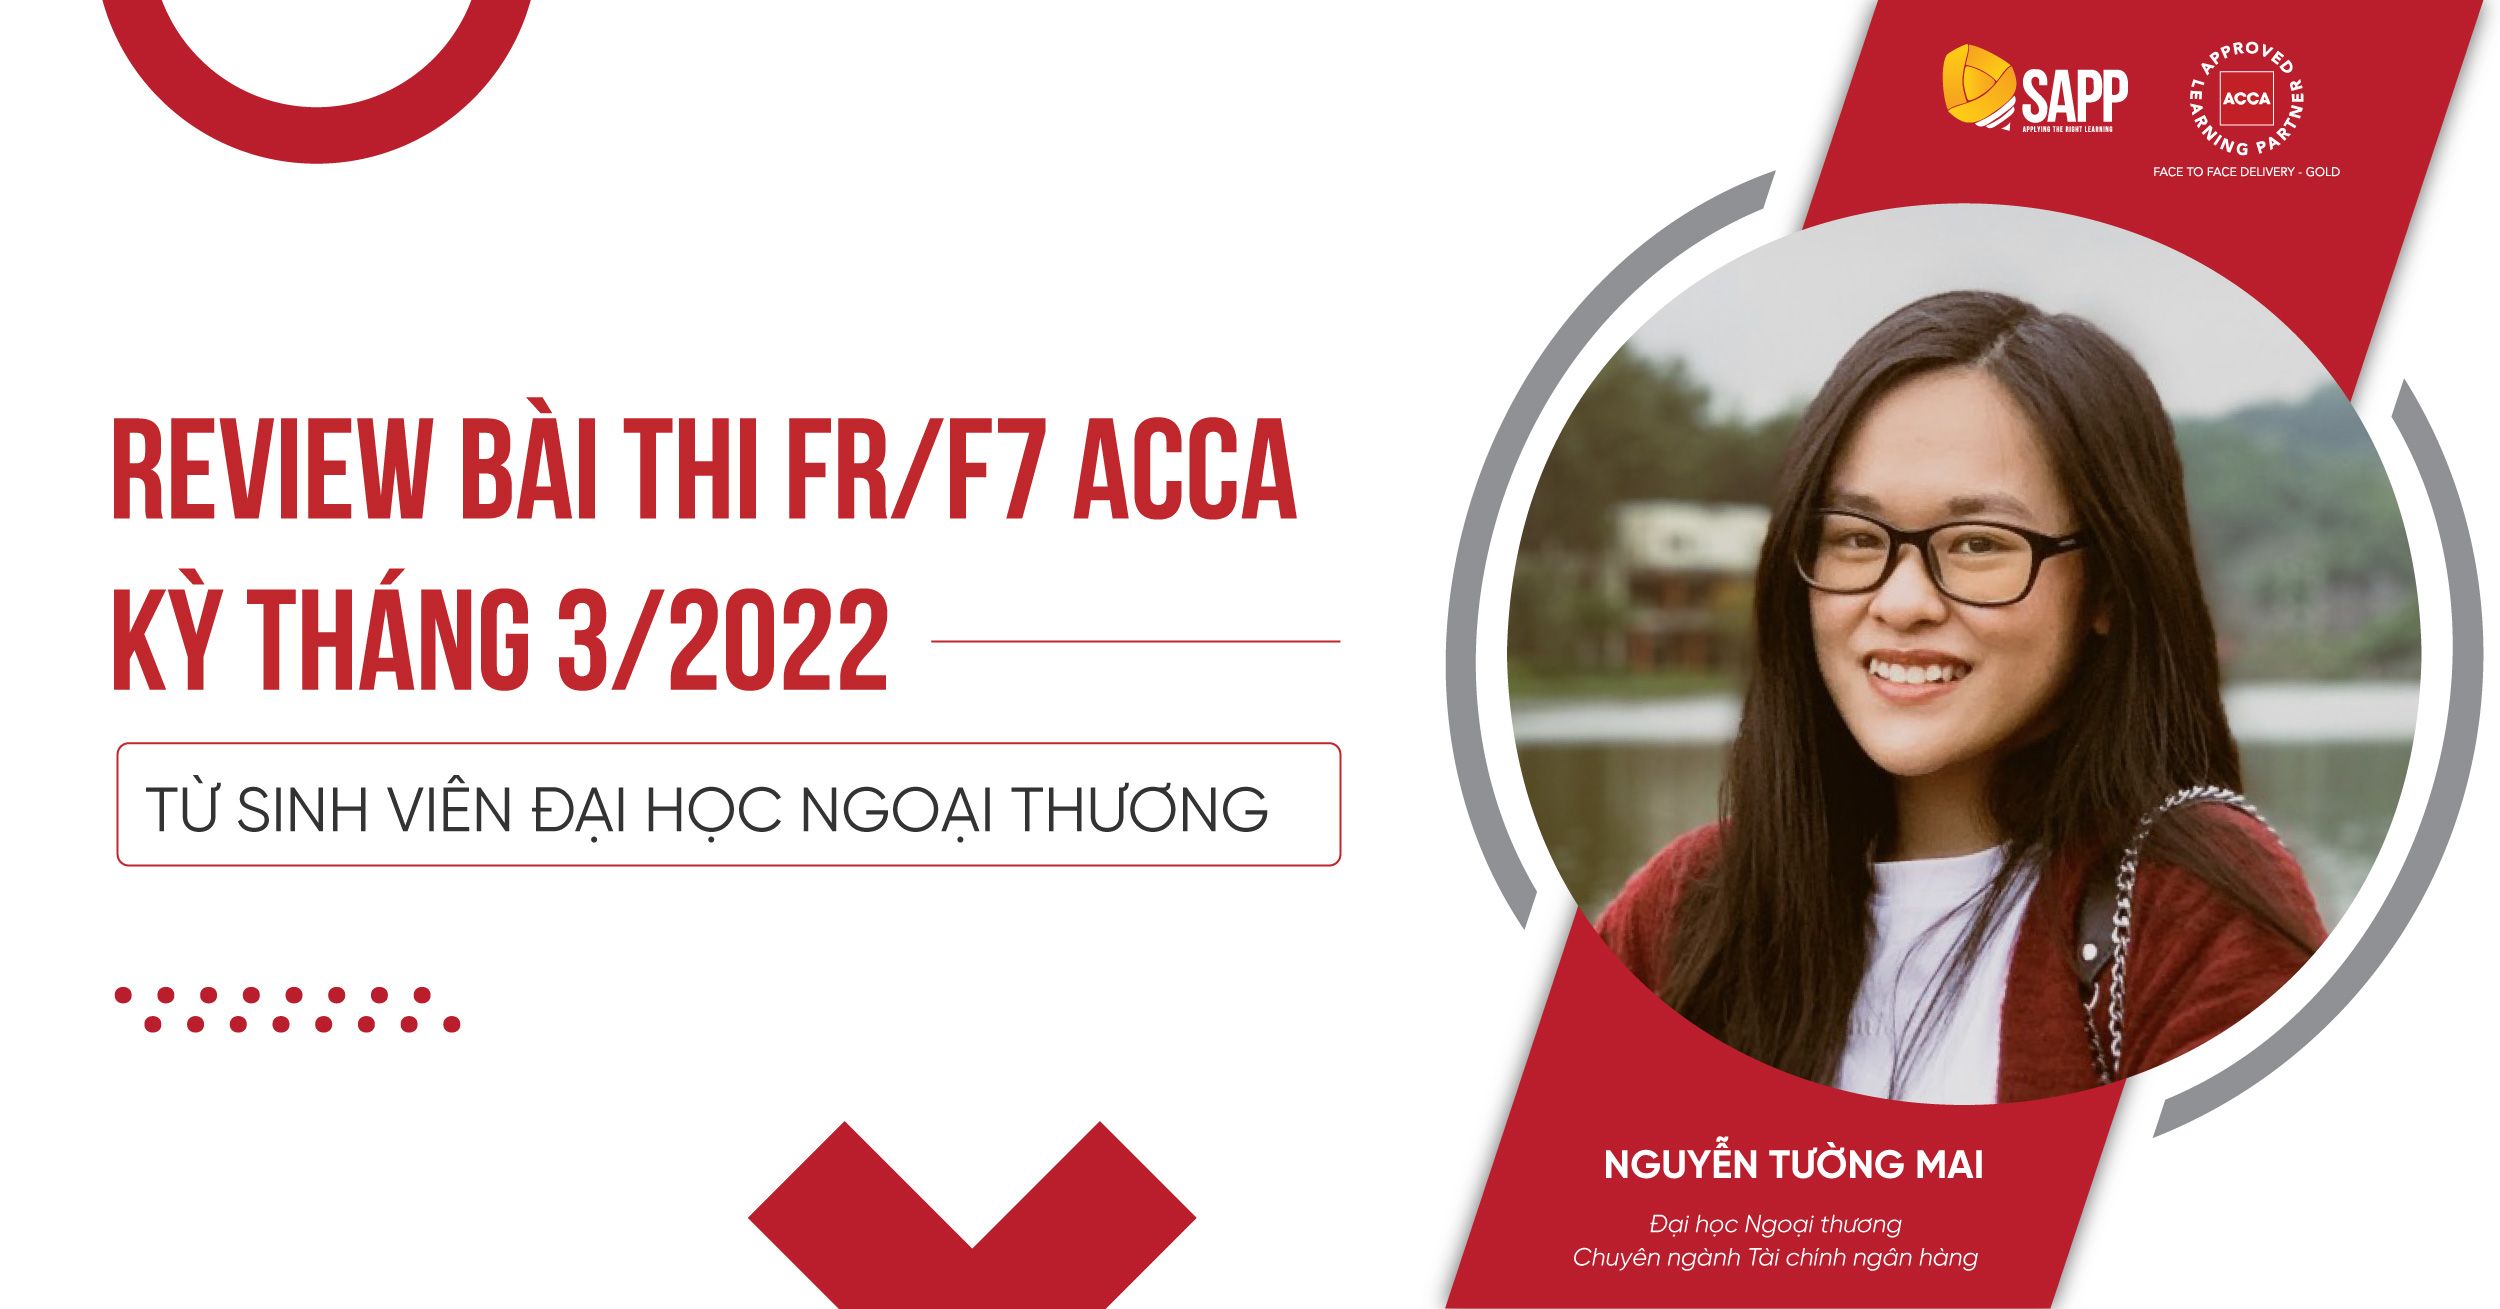 Review Chi Tiết Bài Thi FR/F7 ACCA Kỳ Tháng 3/2022 Từ Cô Sinh Viên Đại Học Ngoại Thương